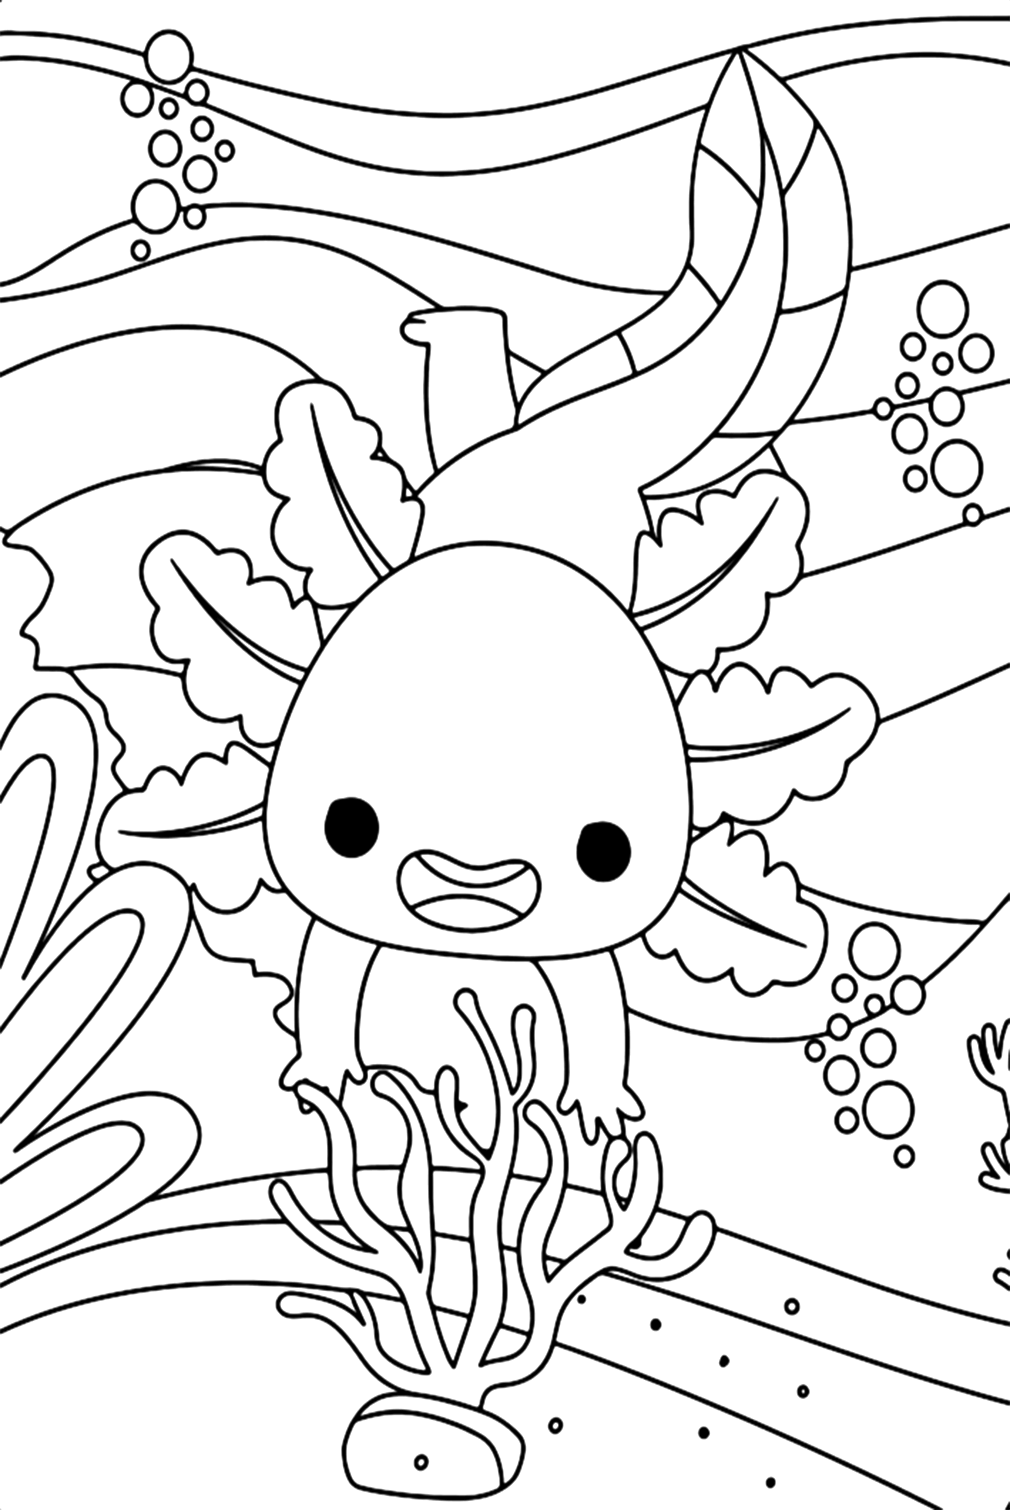 Axolotl Coloring Sheet Coloring Pages